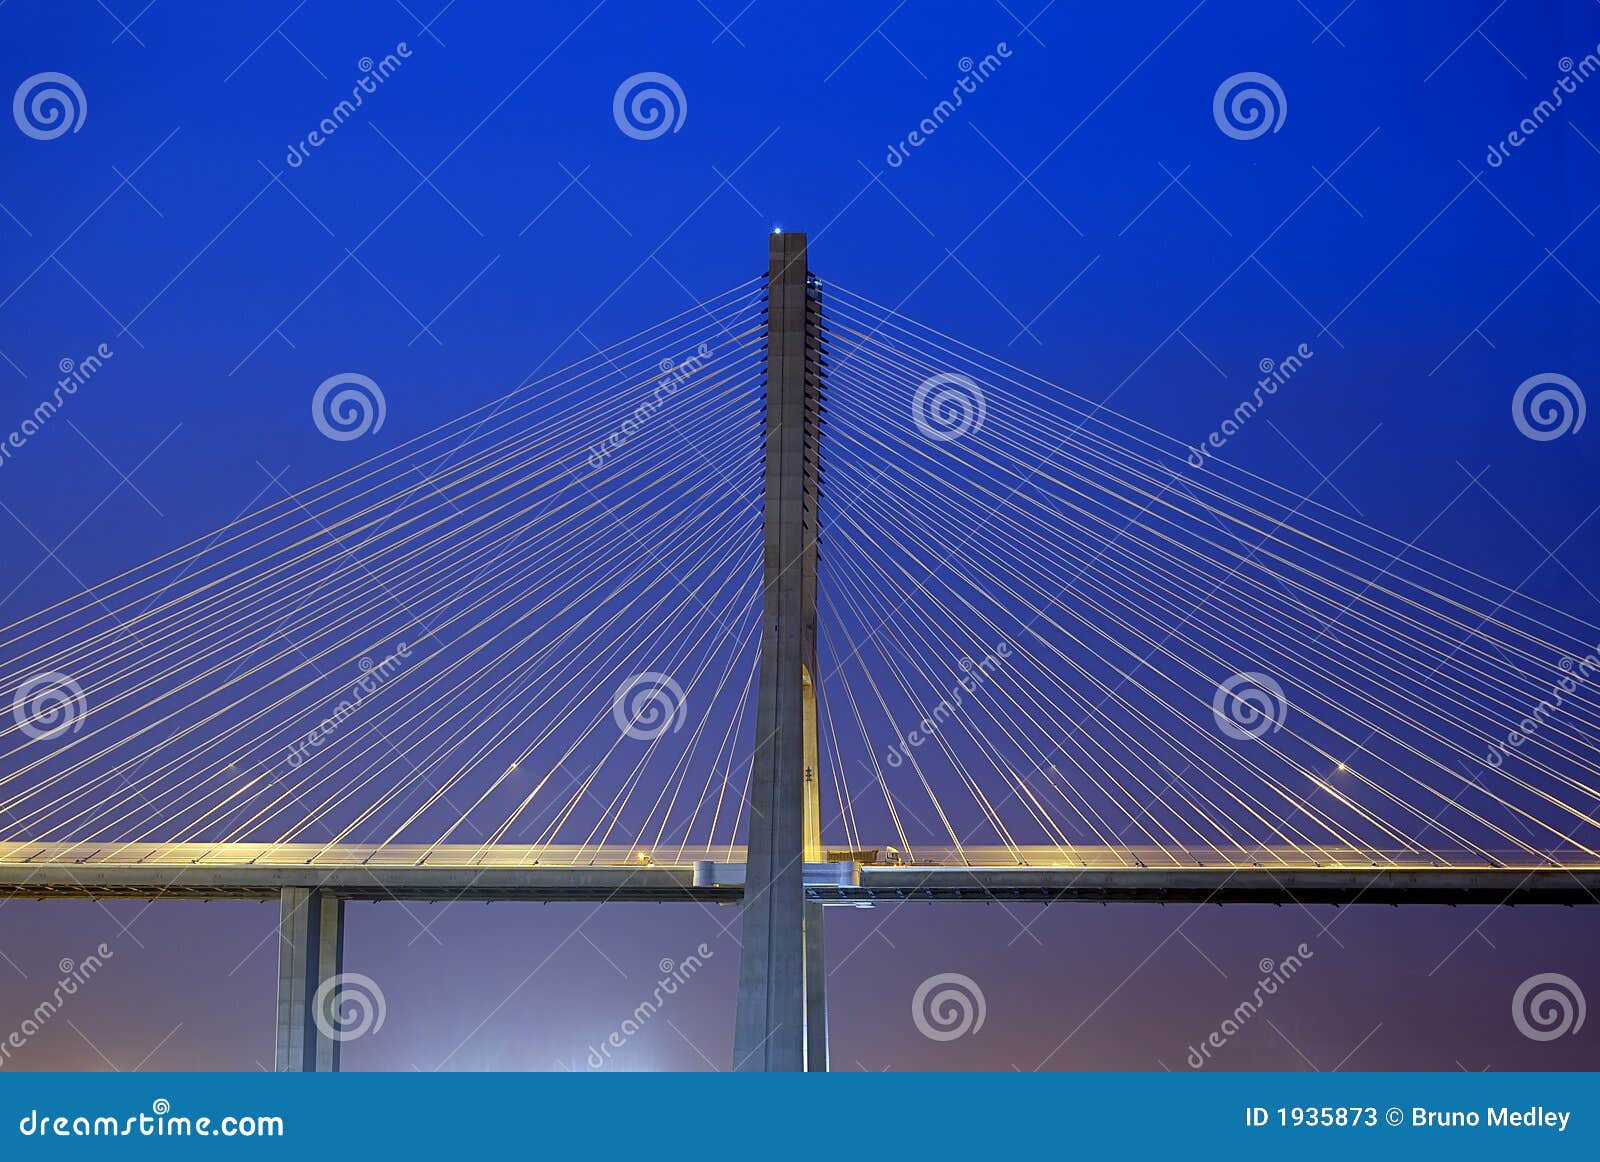 vasco da gama bridge, biggest bridge of europe